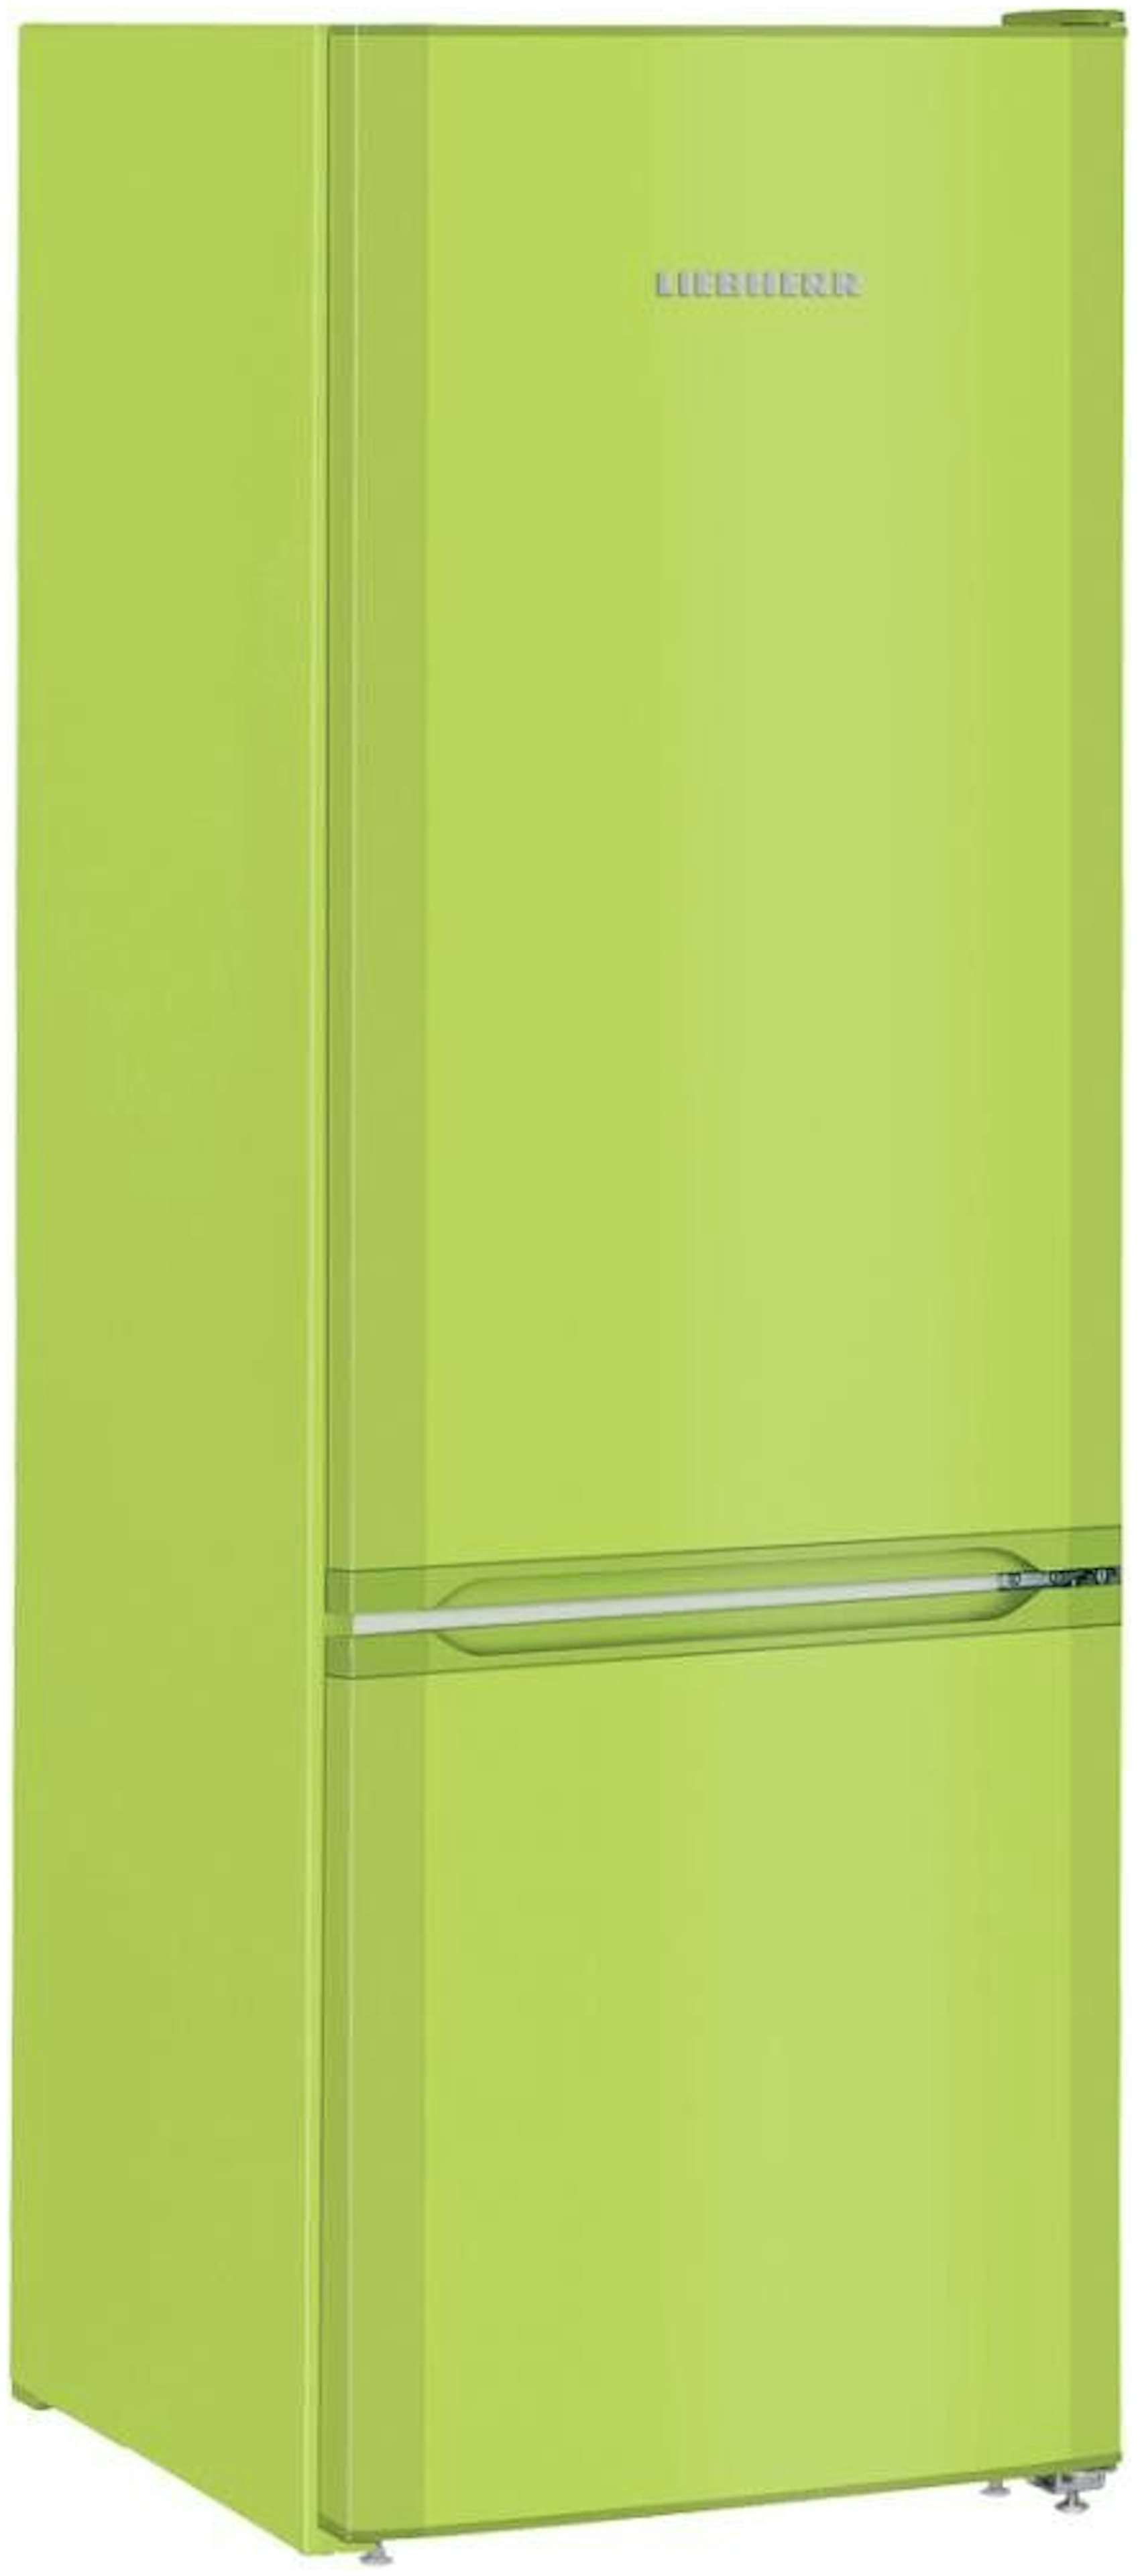 Duizeligheid rechtbank kralen Groene koelkast kopen? - Alle koelkasten in de kleur groen!